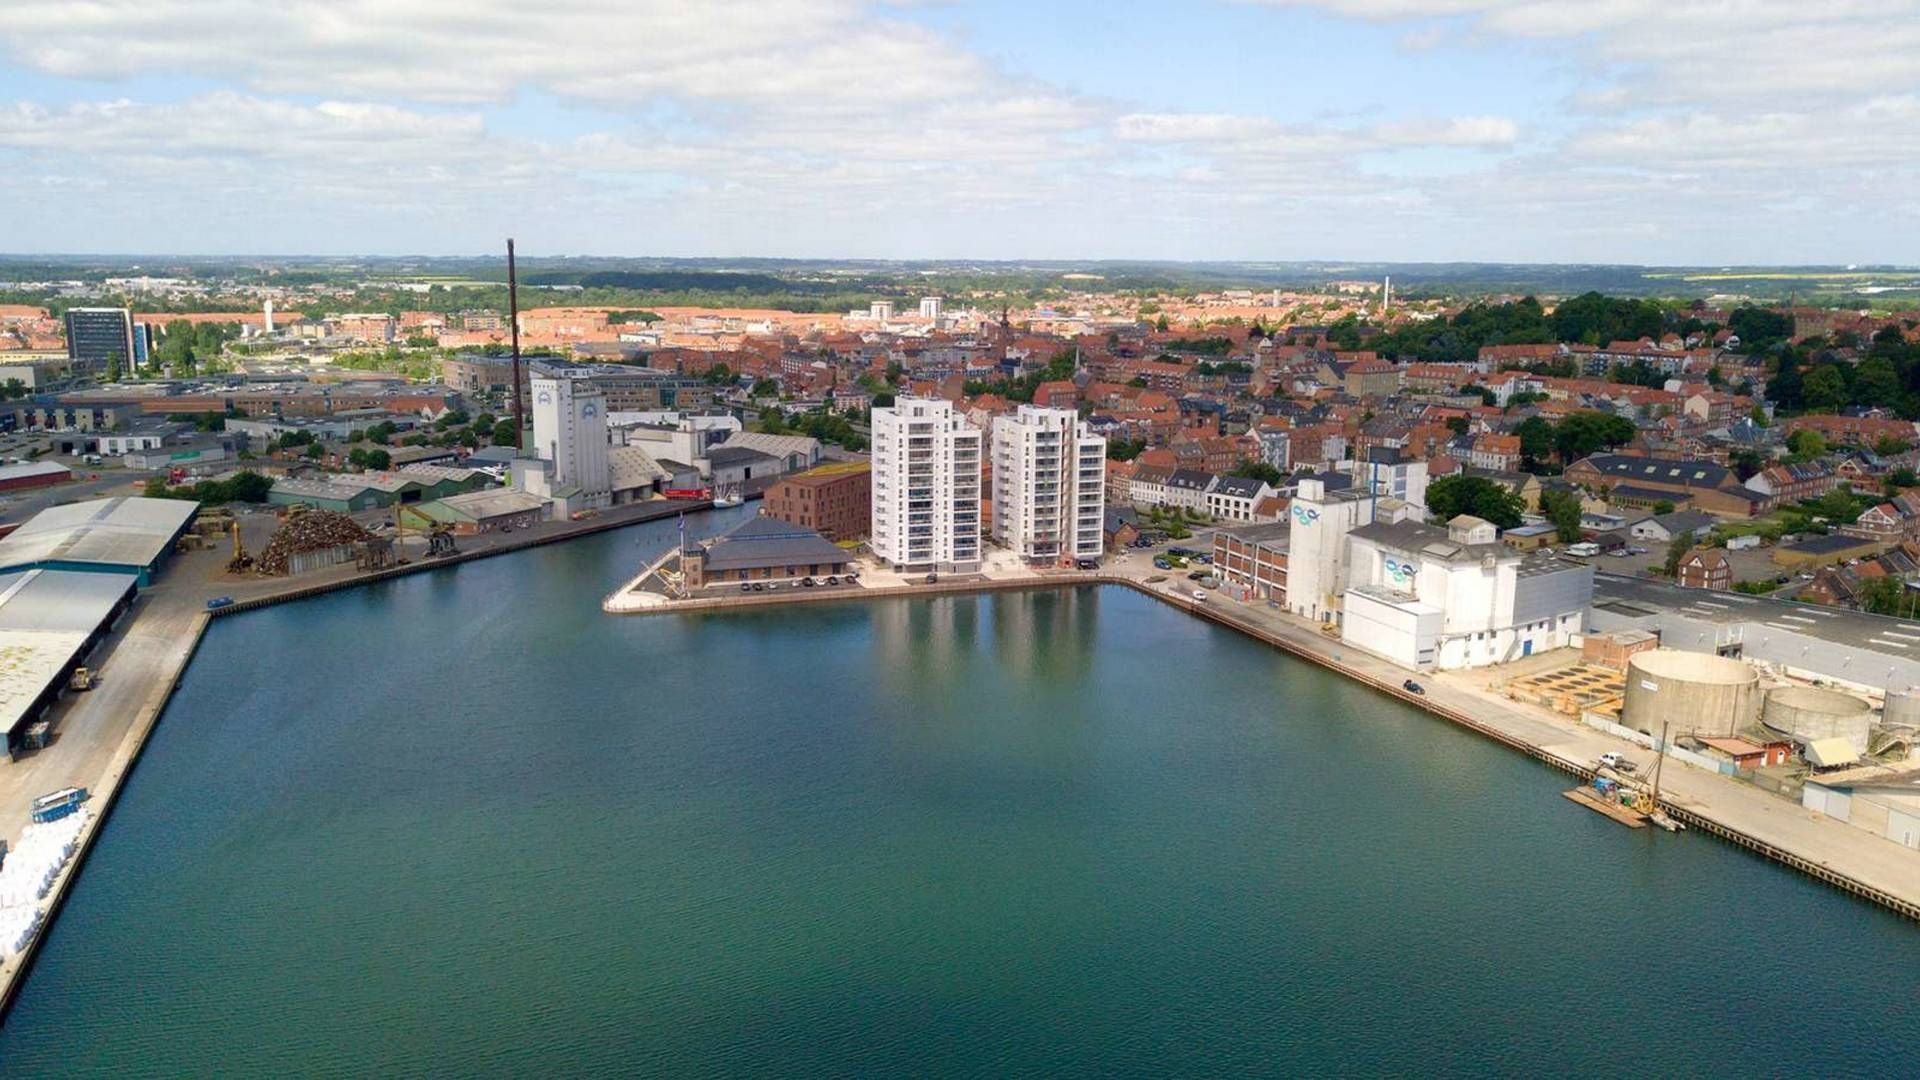 Horsens, Viborg og en række østjyske provinsbyer er de seneste år vokset betragteligt. I Horsens er indbyggertallet steget med 1.000 personer årligt siden 2012 | Foto: Horsens Kommune